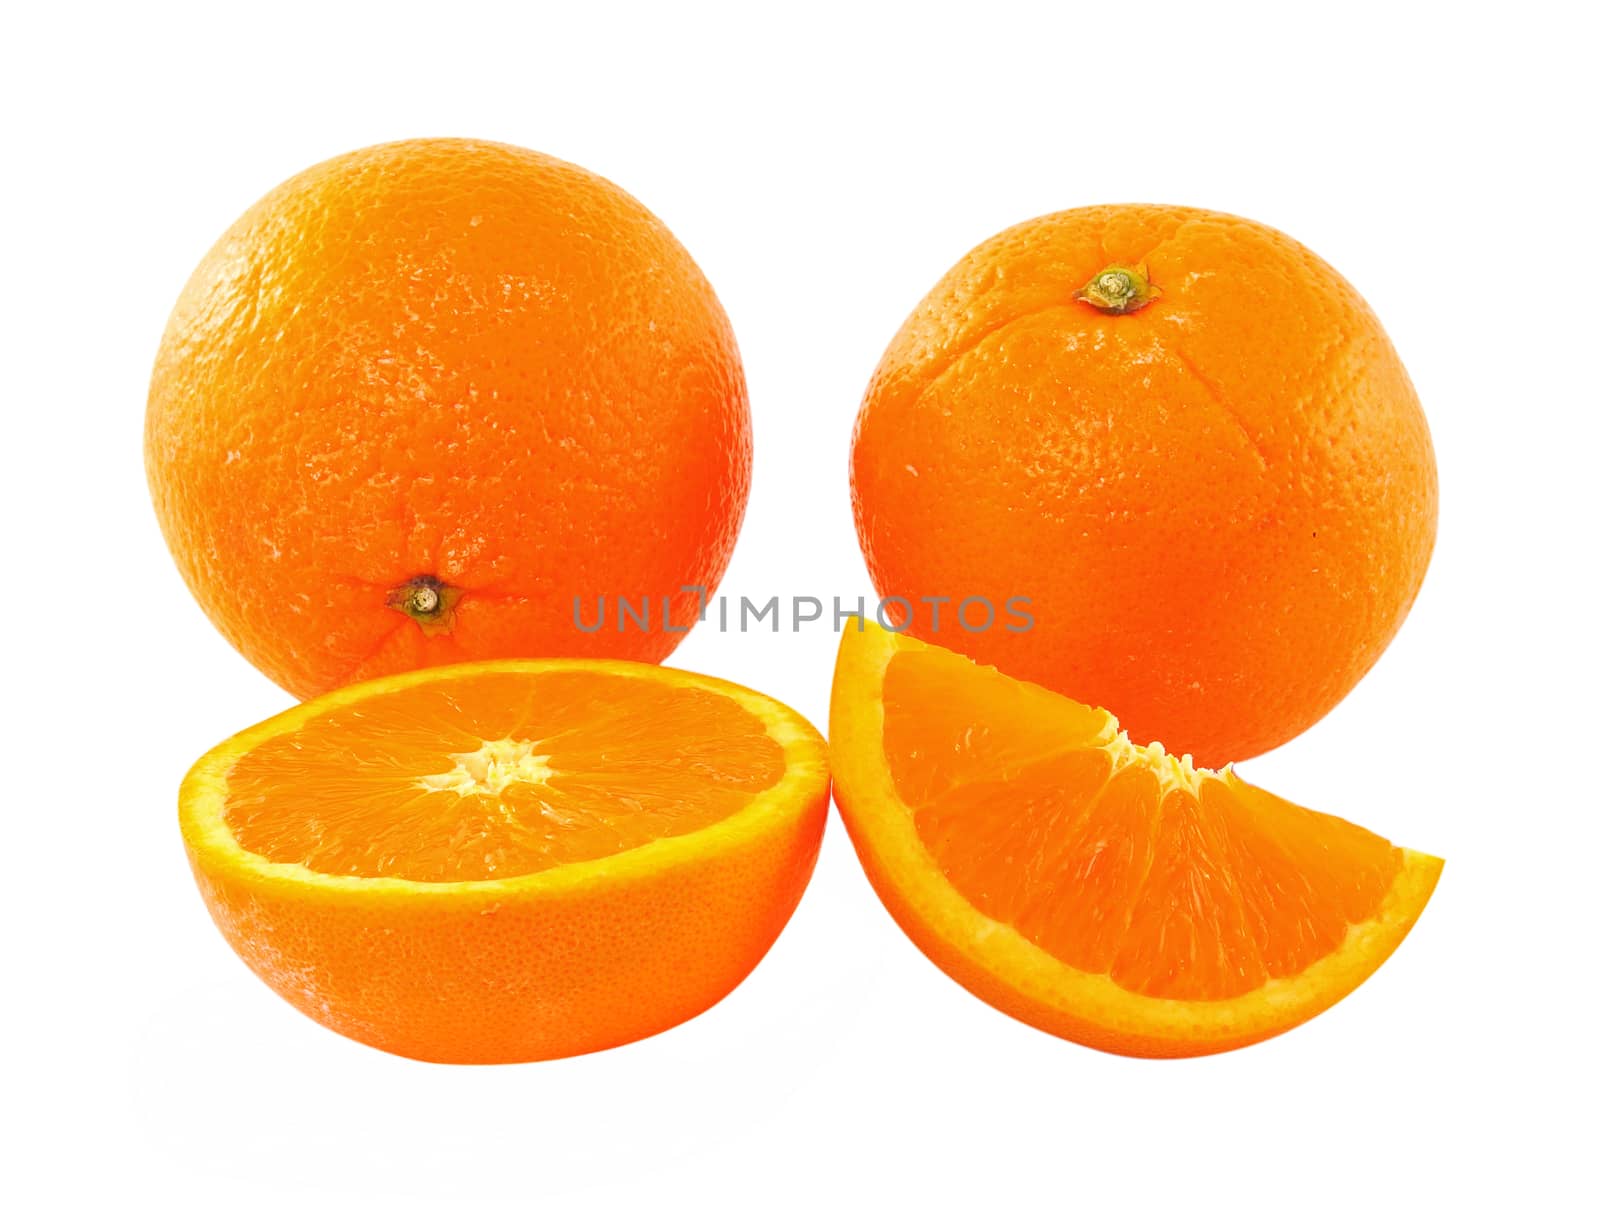 orange on white background by sommai